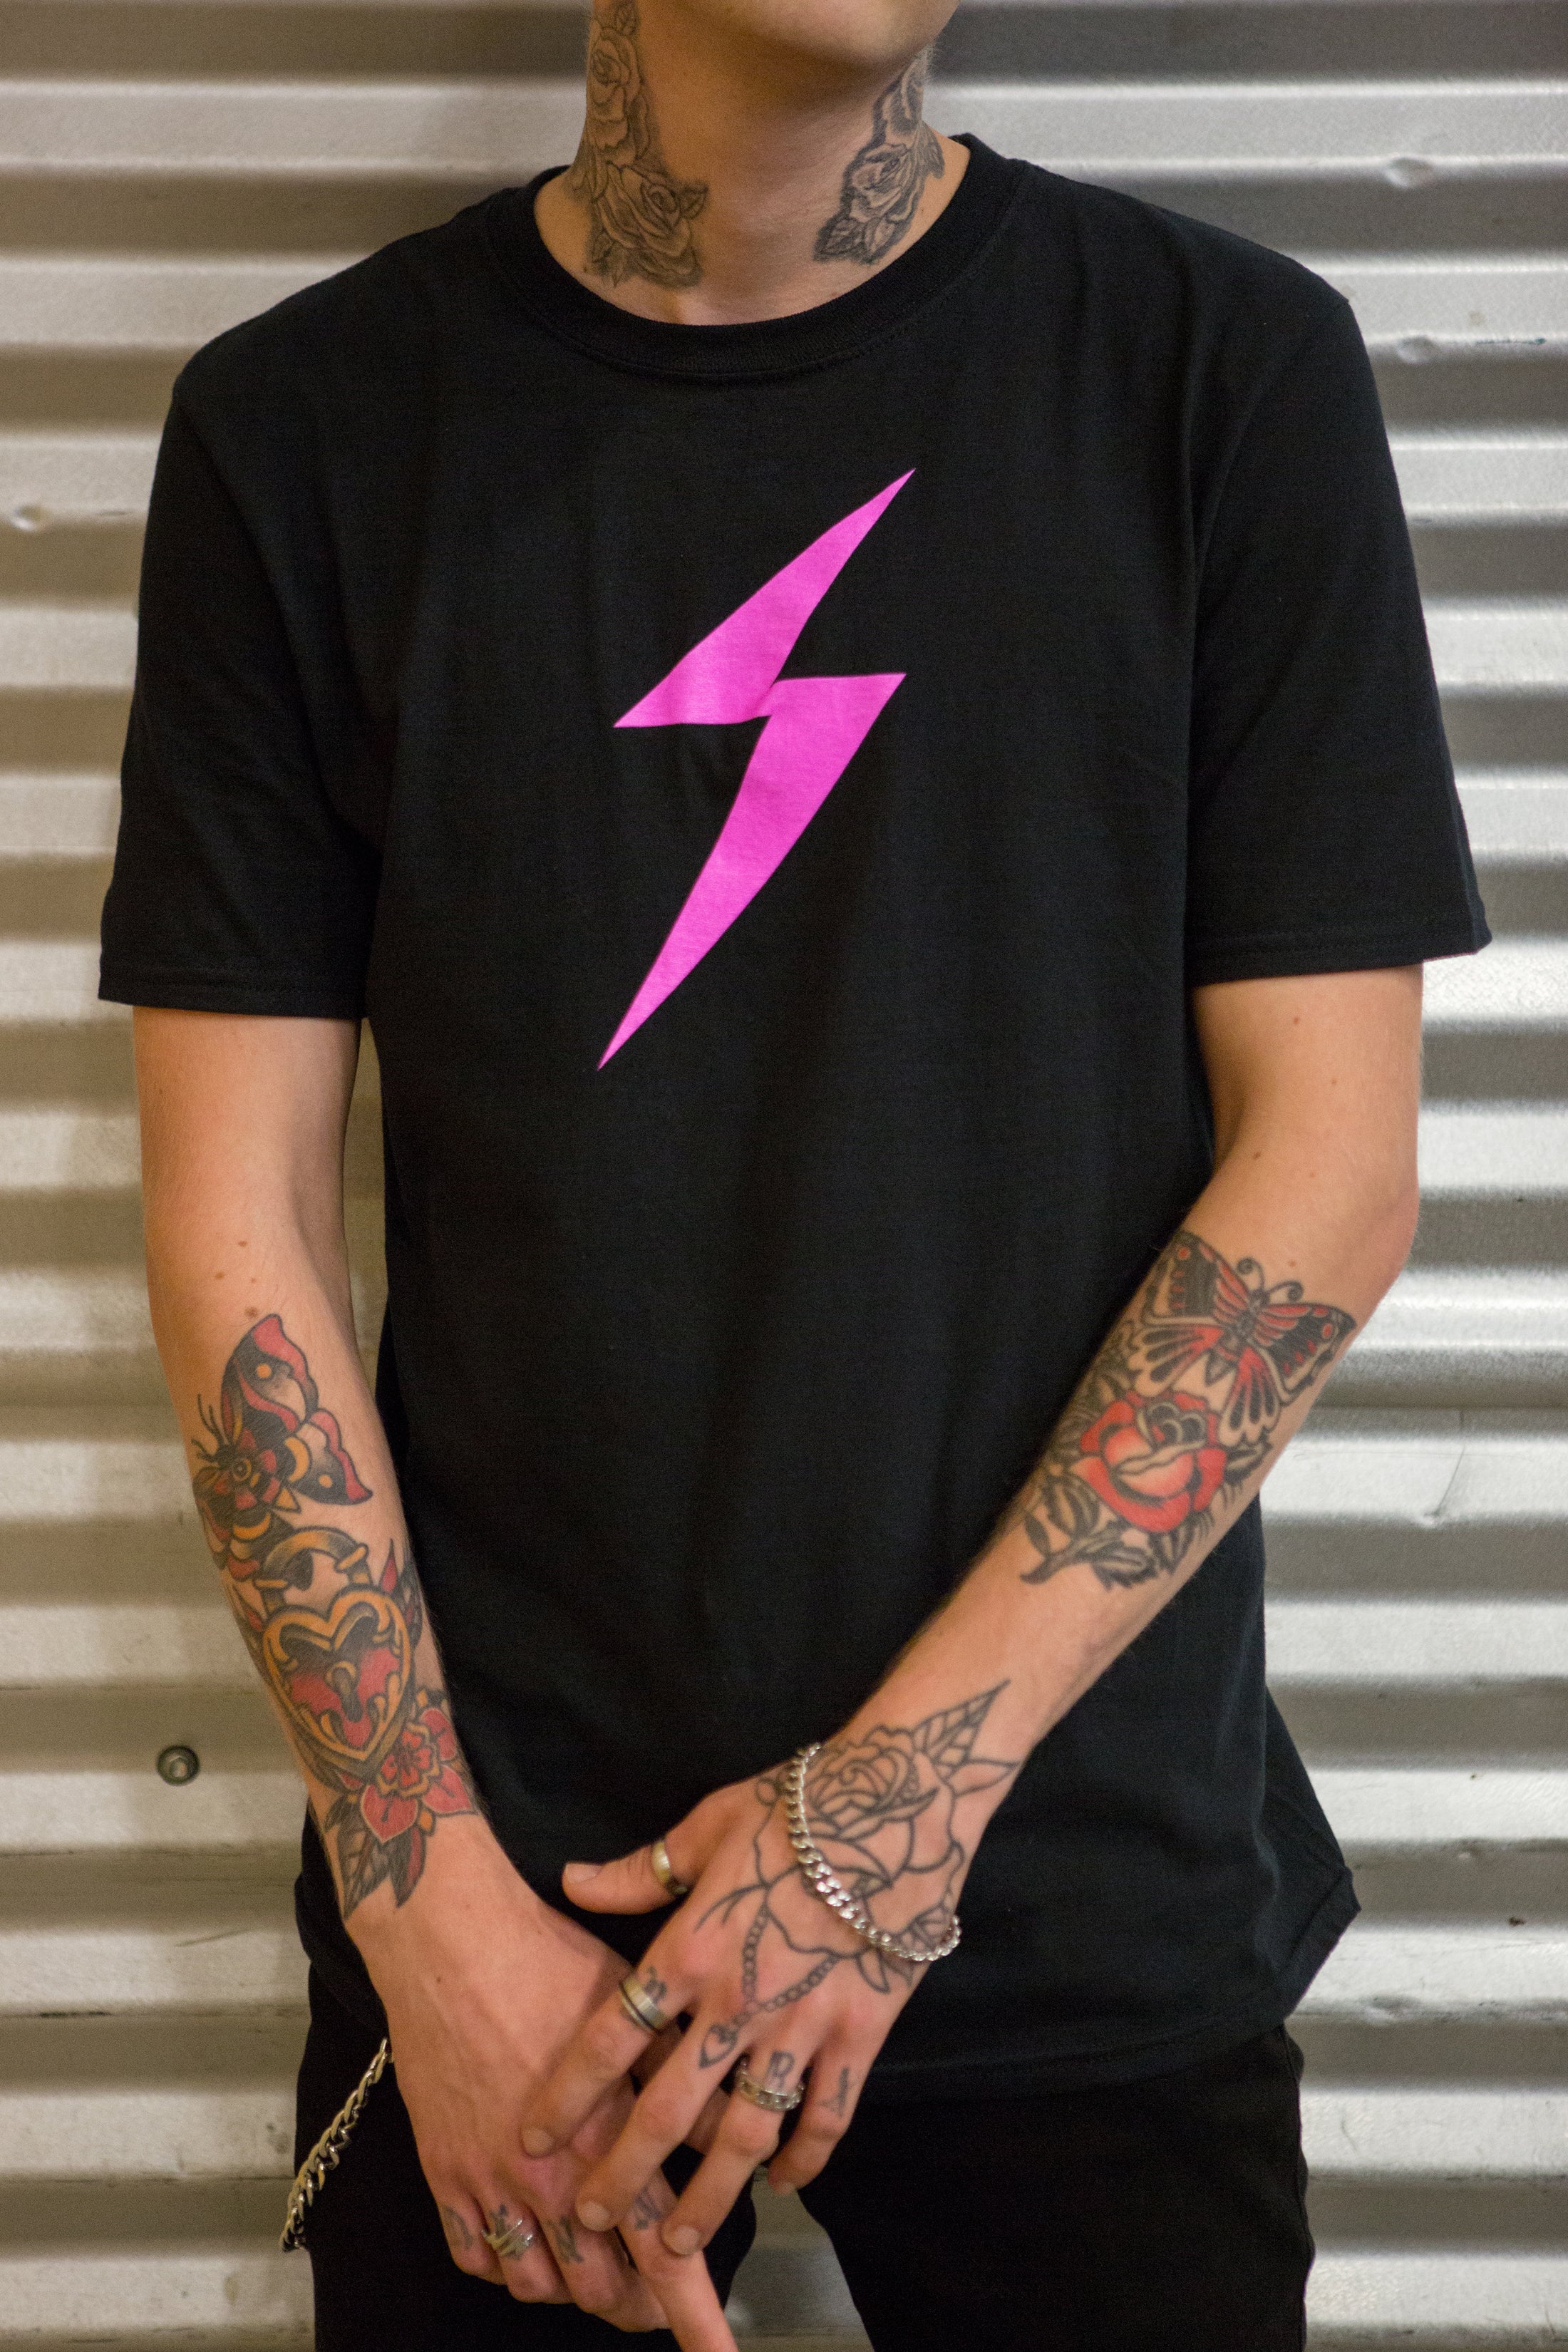 Pink Lightning Bolt T-Shirt - Unisex - Women Who Rock